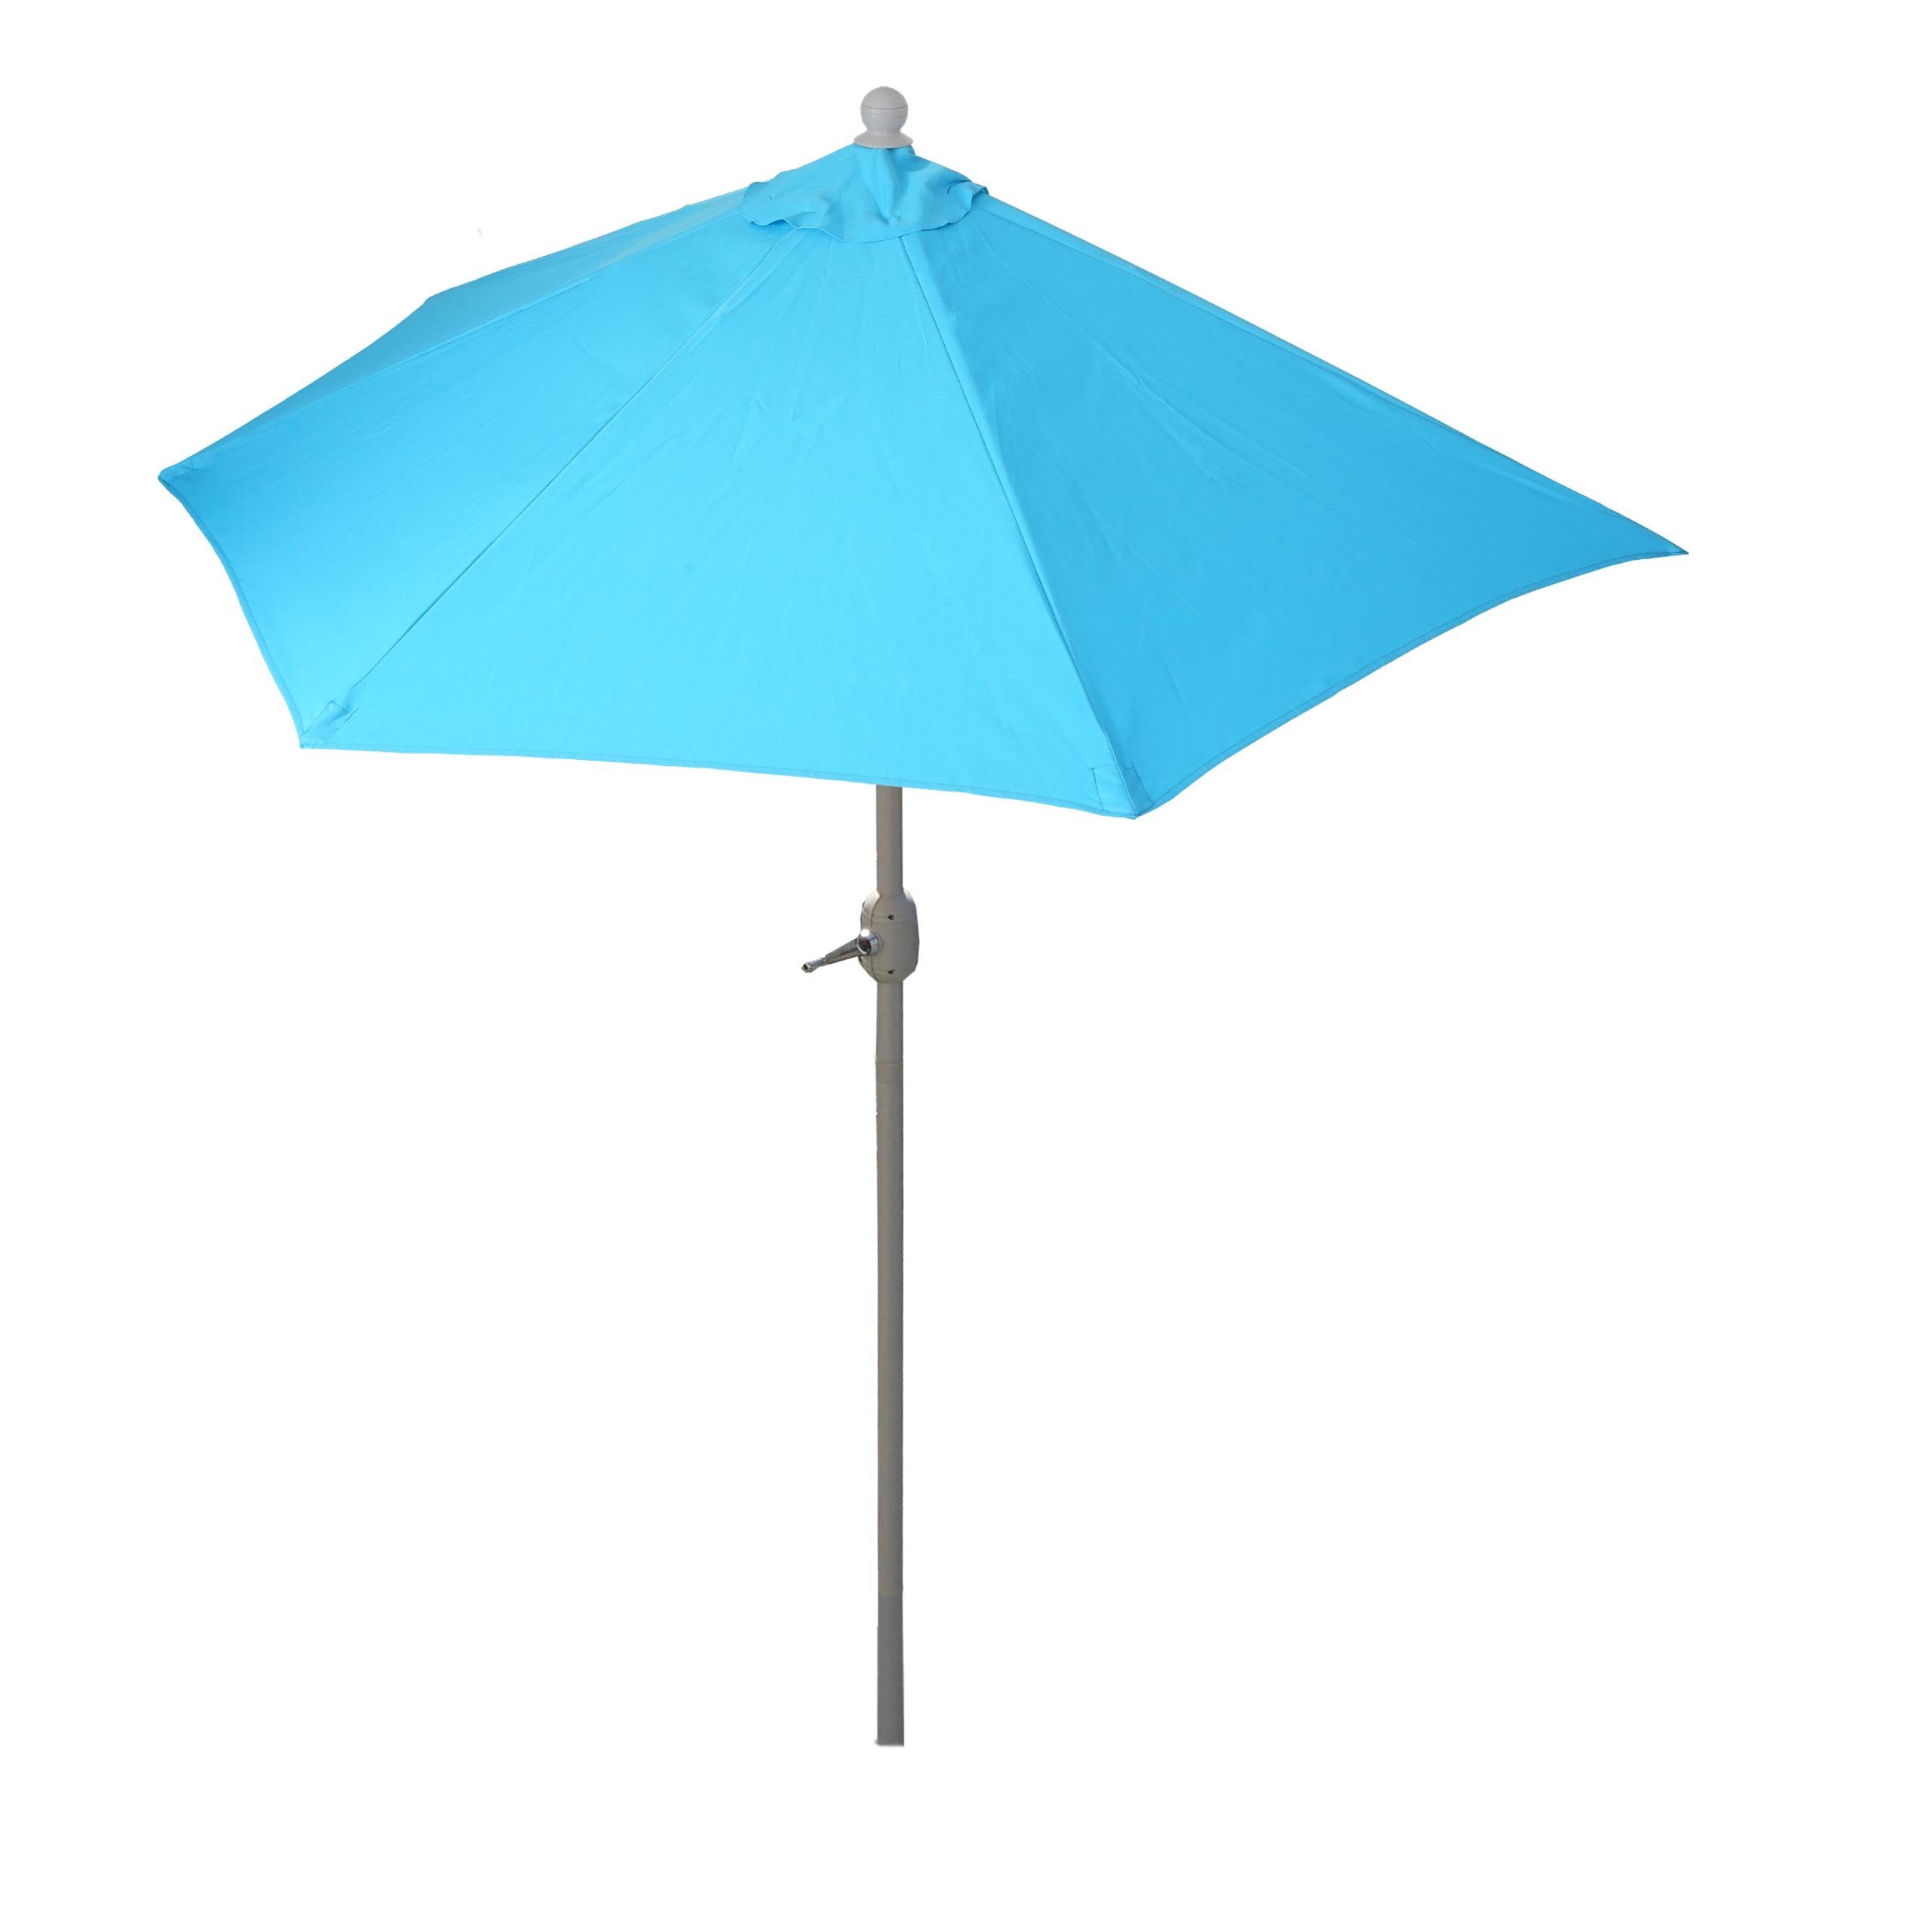 MCW Balkonschirm Lorca-300, LxB: 285x135 cm, Optional mit Schirmständer, witterungsfest Platzsparend faltbar